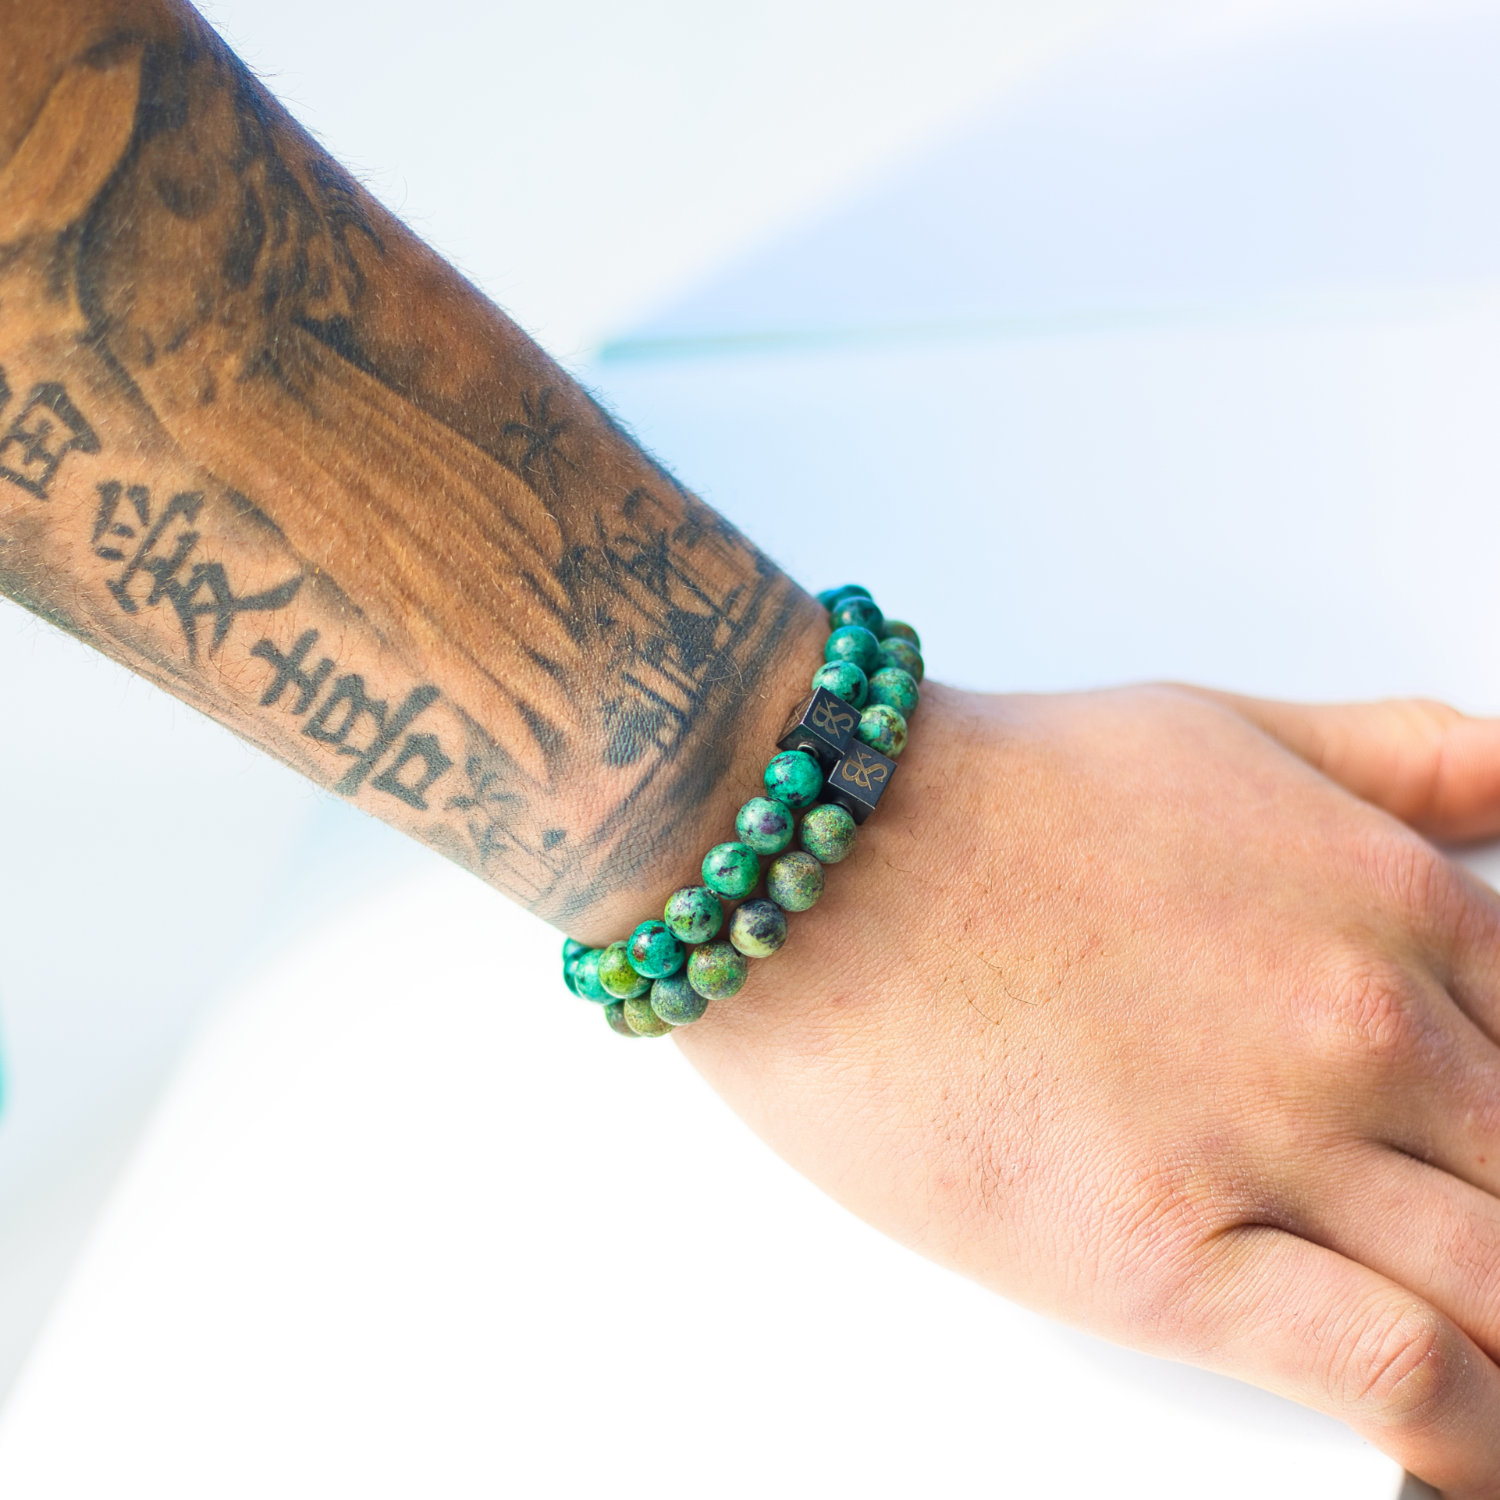 Een groene armband genaamd 'African Turquoise Stones', prachtig vervaardigd met natuurstenen in verschillende tinten groen. Modelfoto